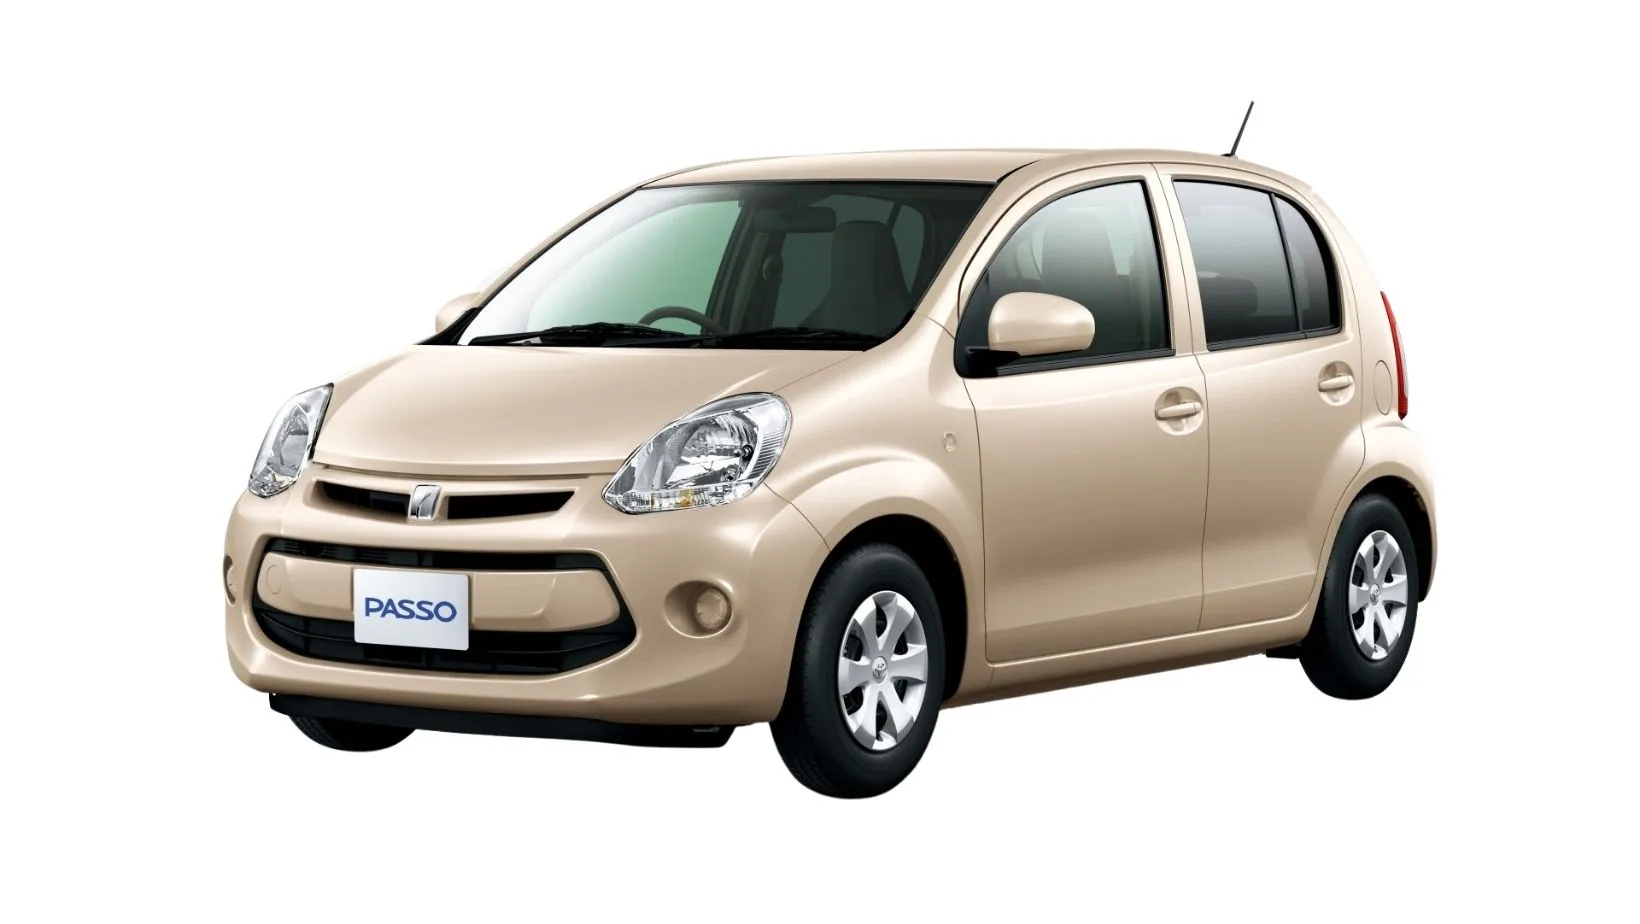 Toyota Passo Price in Sri Lanka